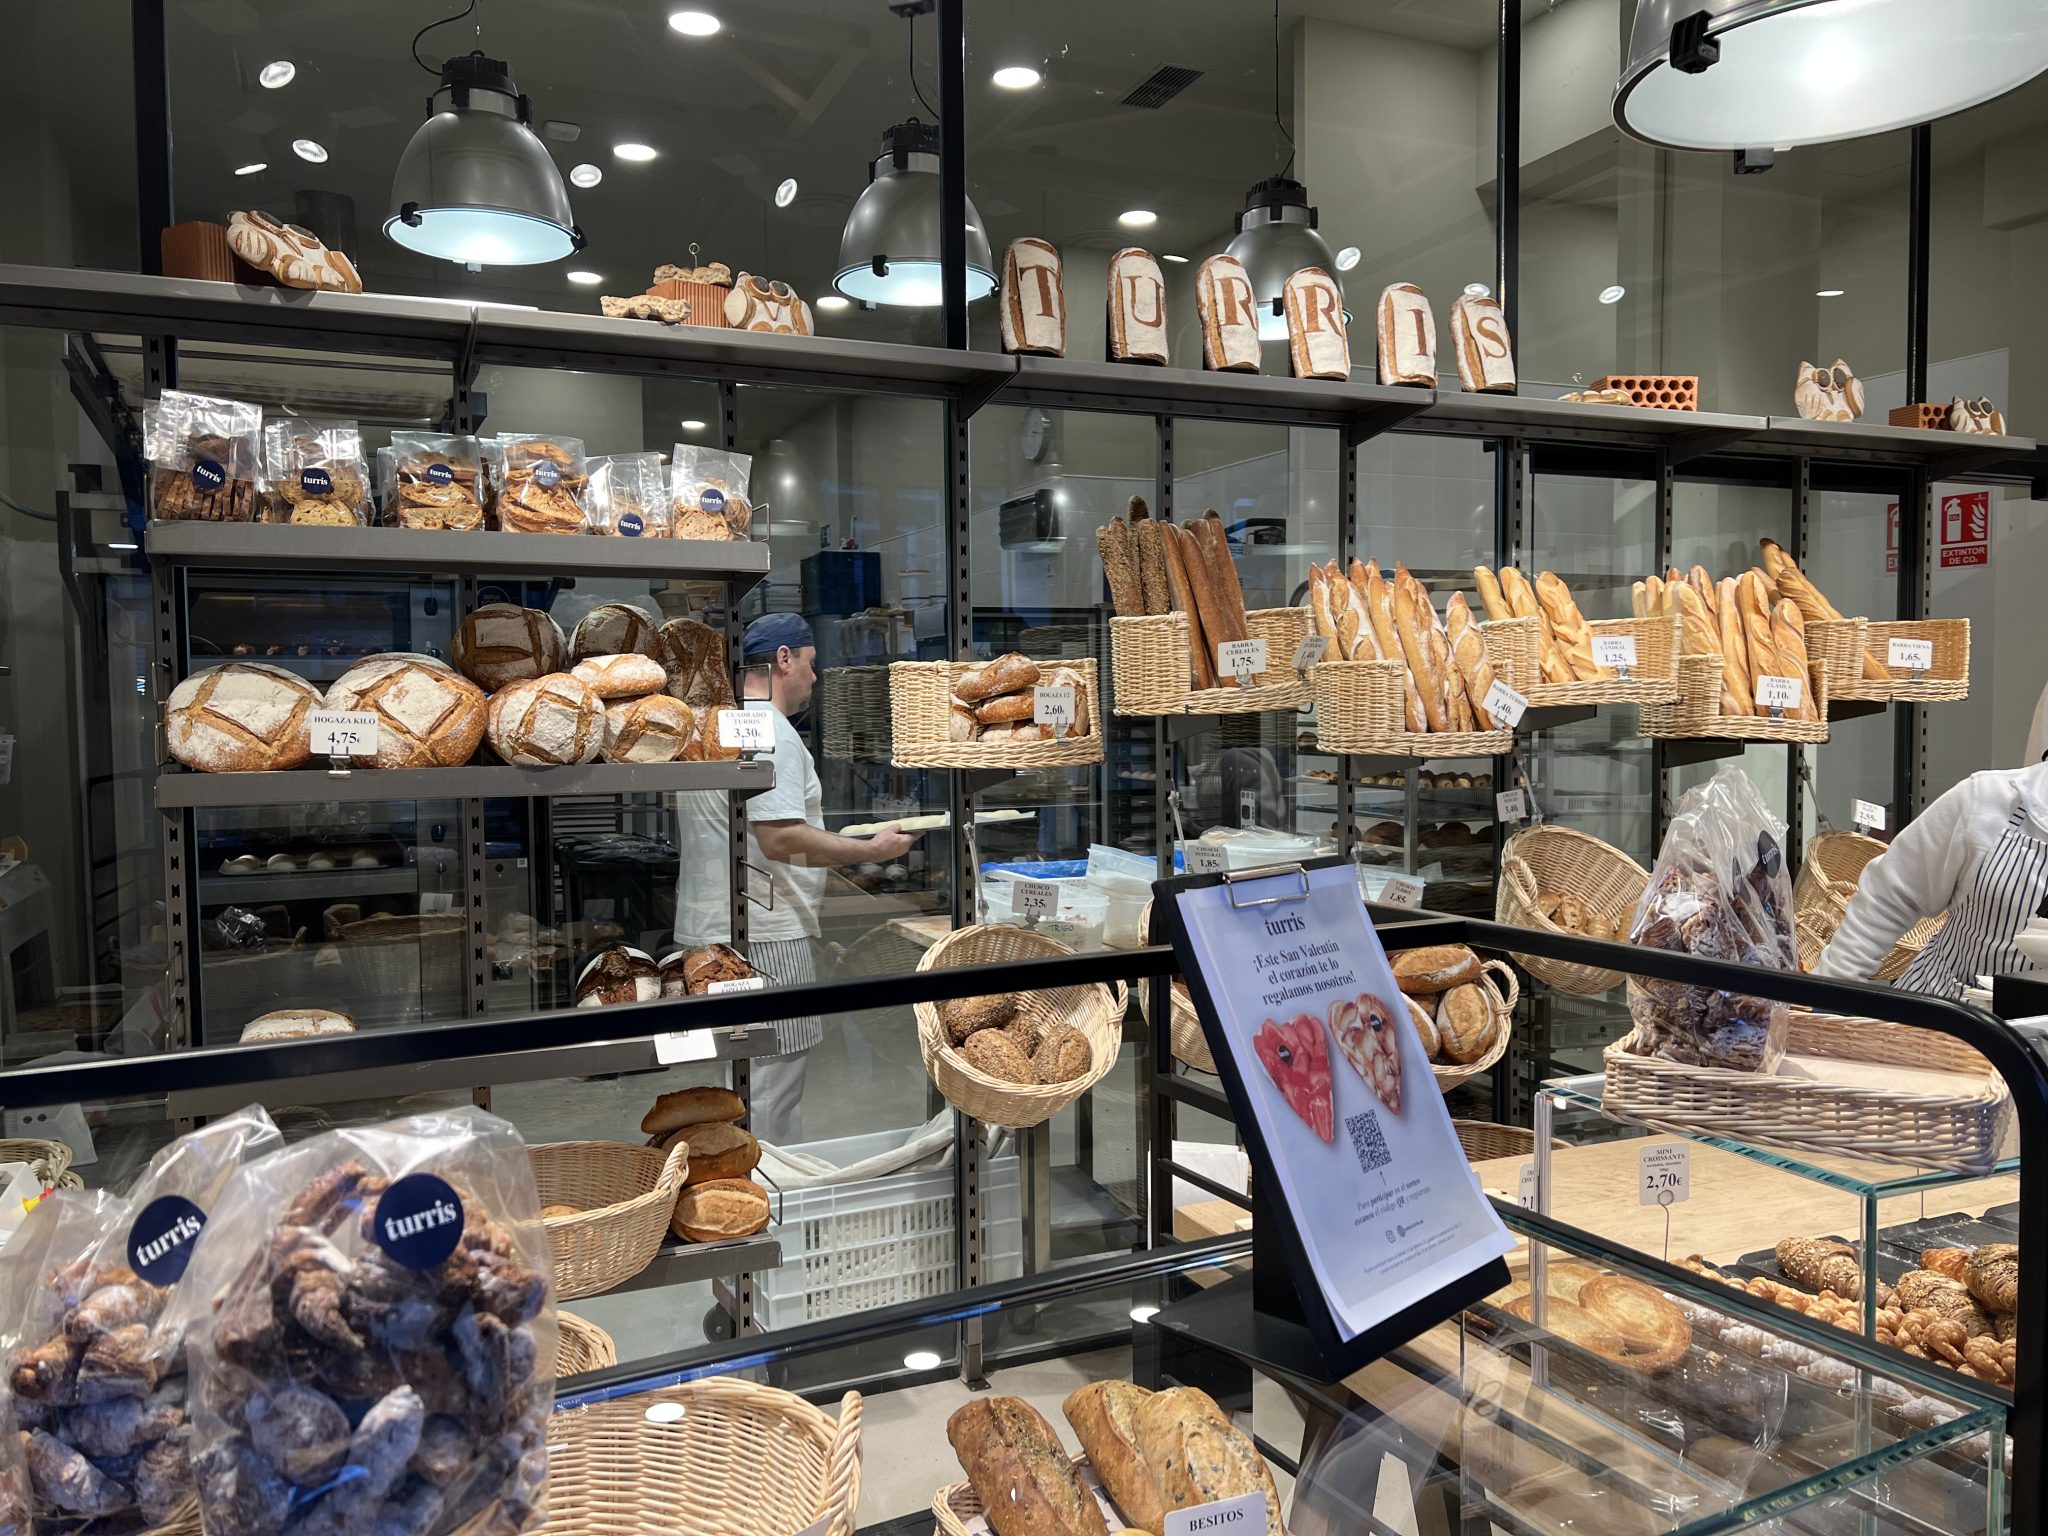 Vista de la panadería Turris en Madrid